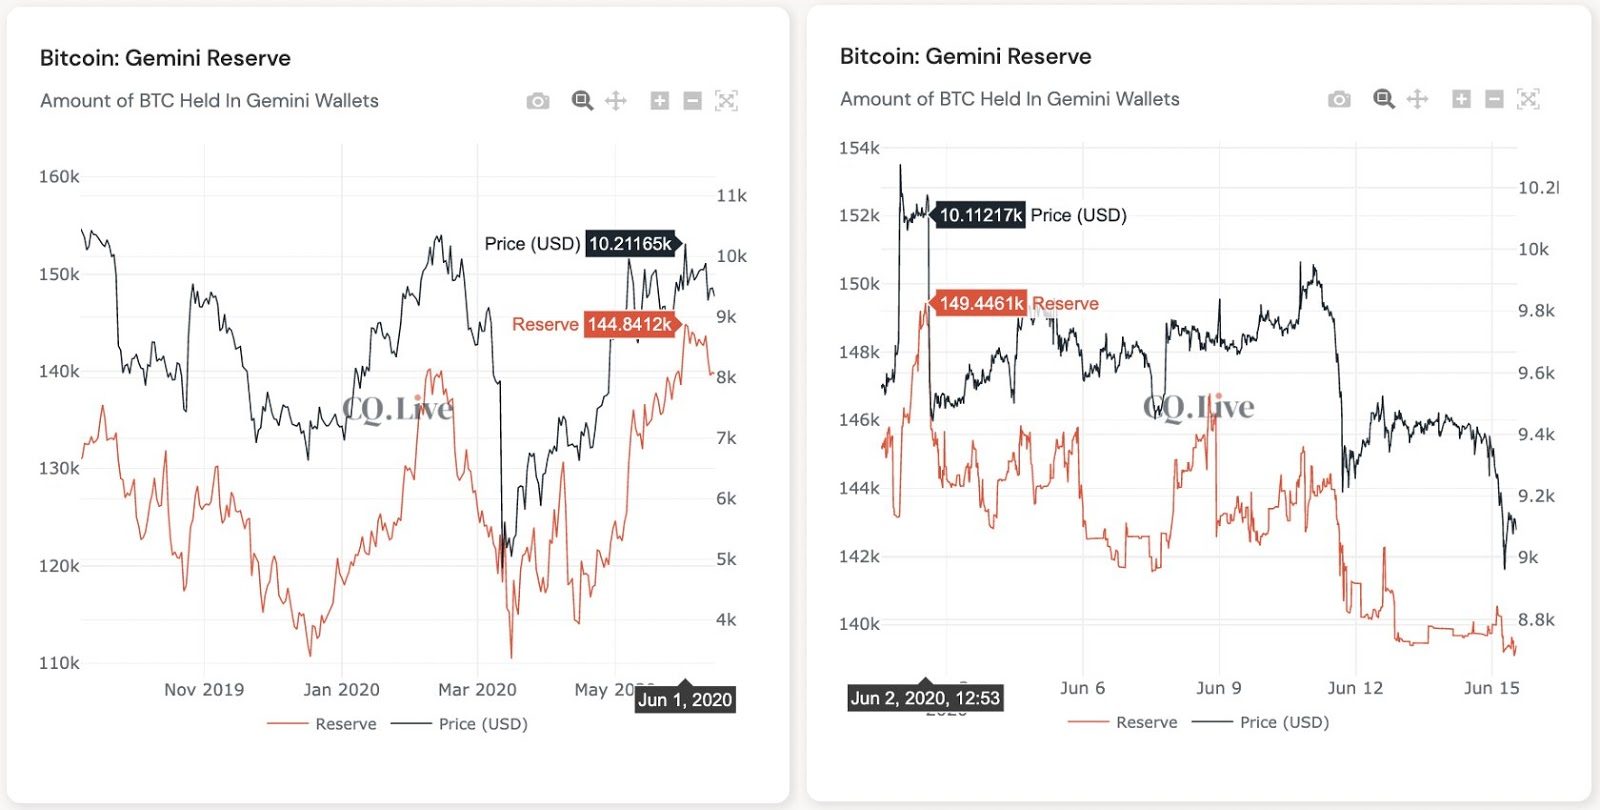 Giá Bitcoin và lượng coin dự trữ trên Gemini ở hai khoảng thời gian đặc biệt